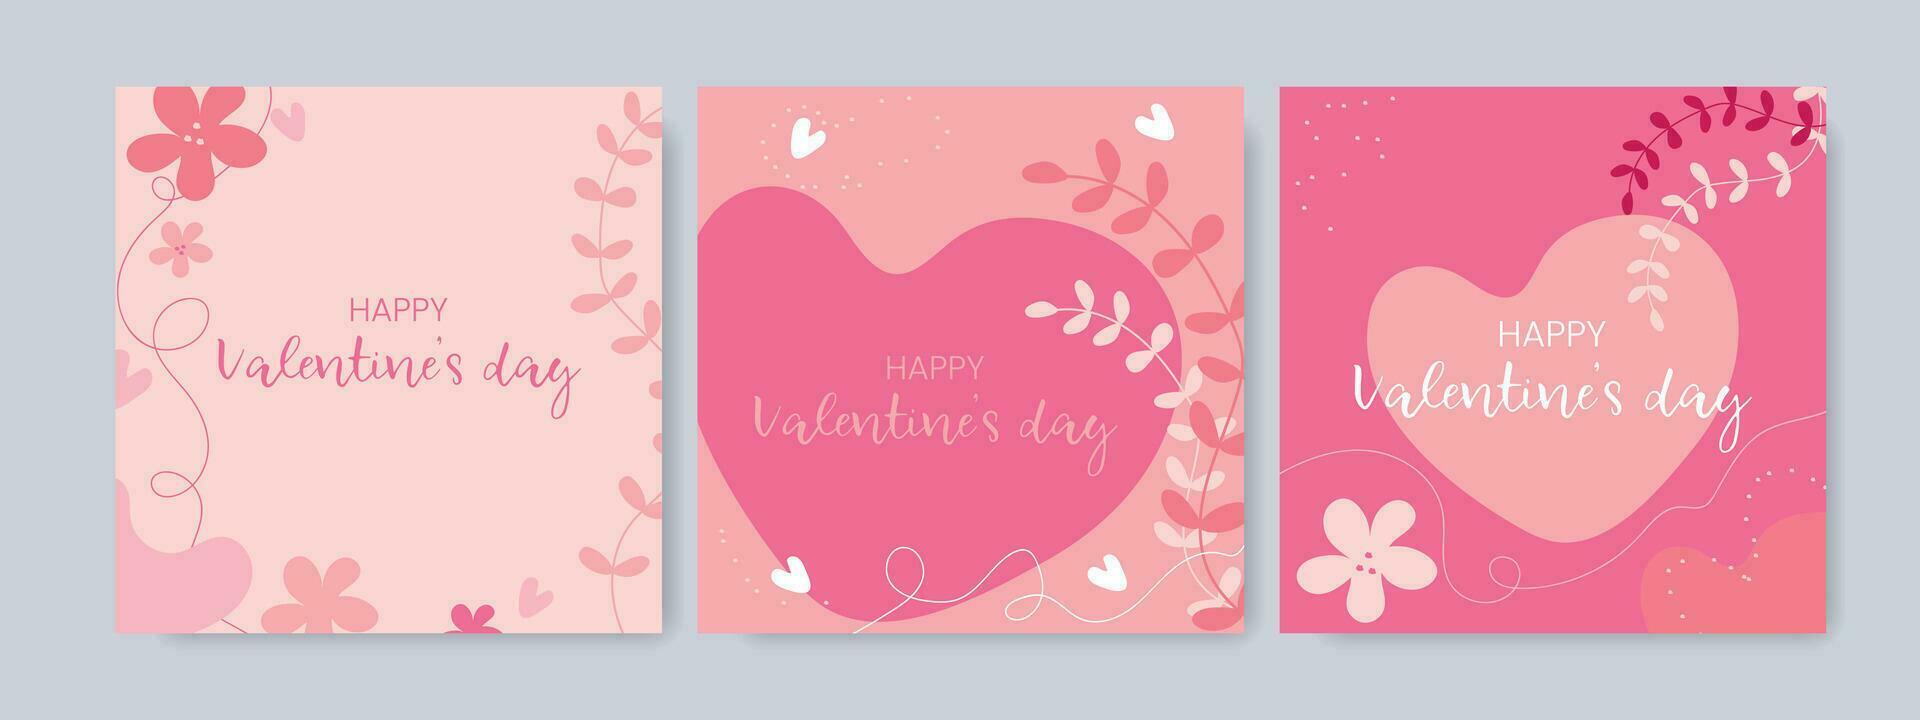 social medios de comunicación enviar plantillas para San Valentín día. vector ilustración para bandera y web publicidad diseño.